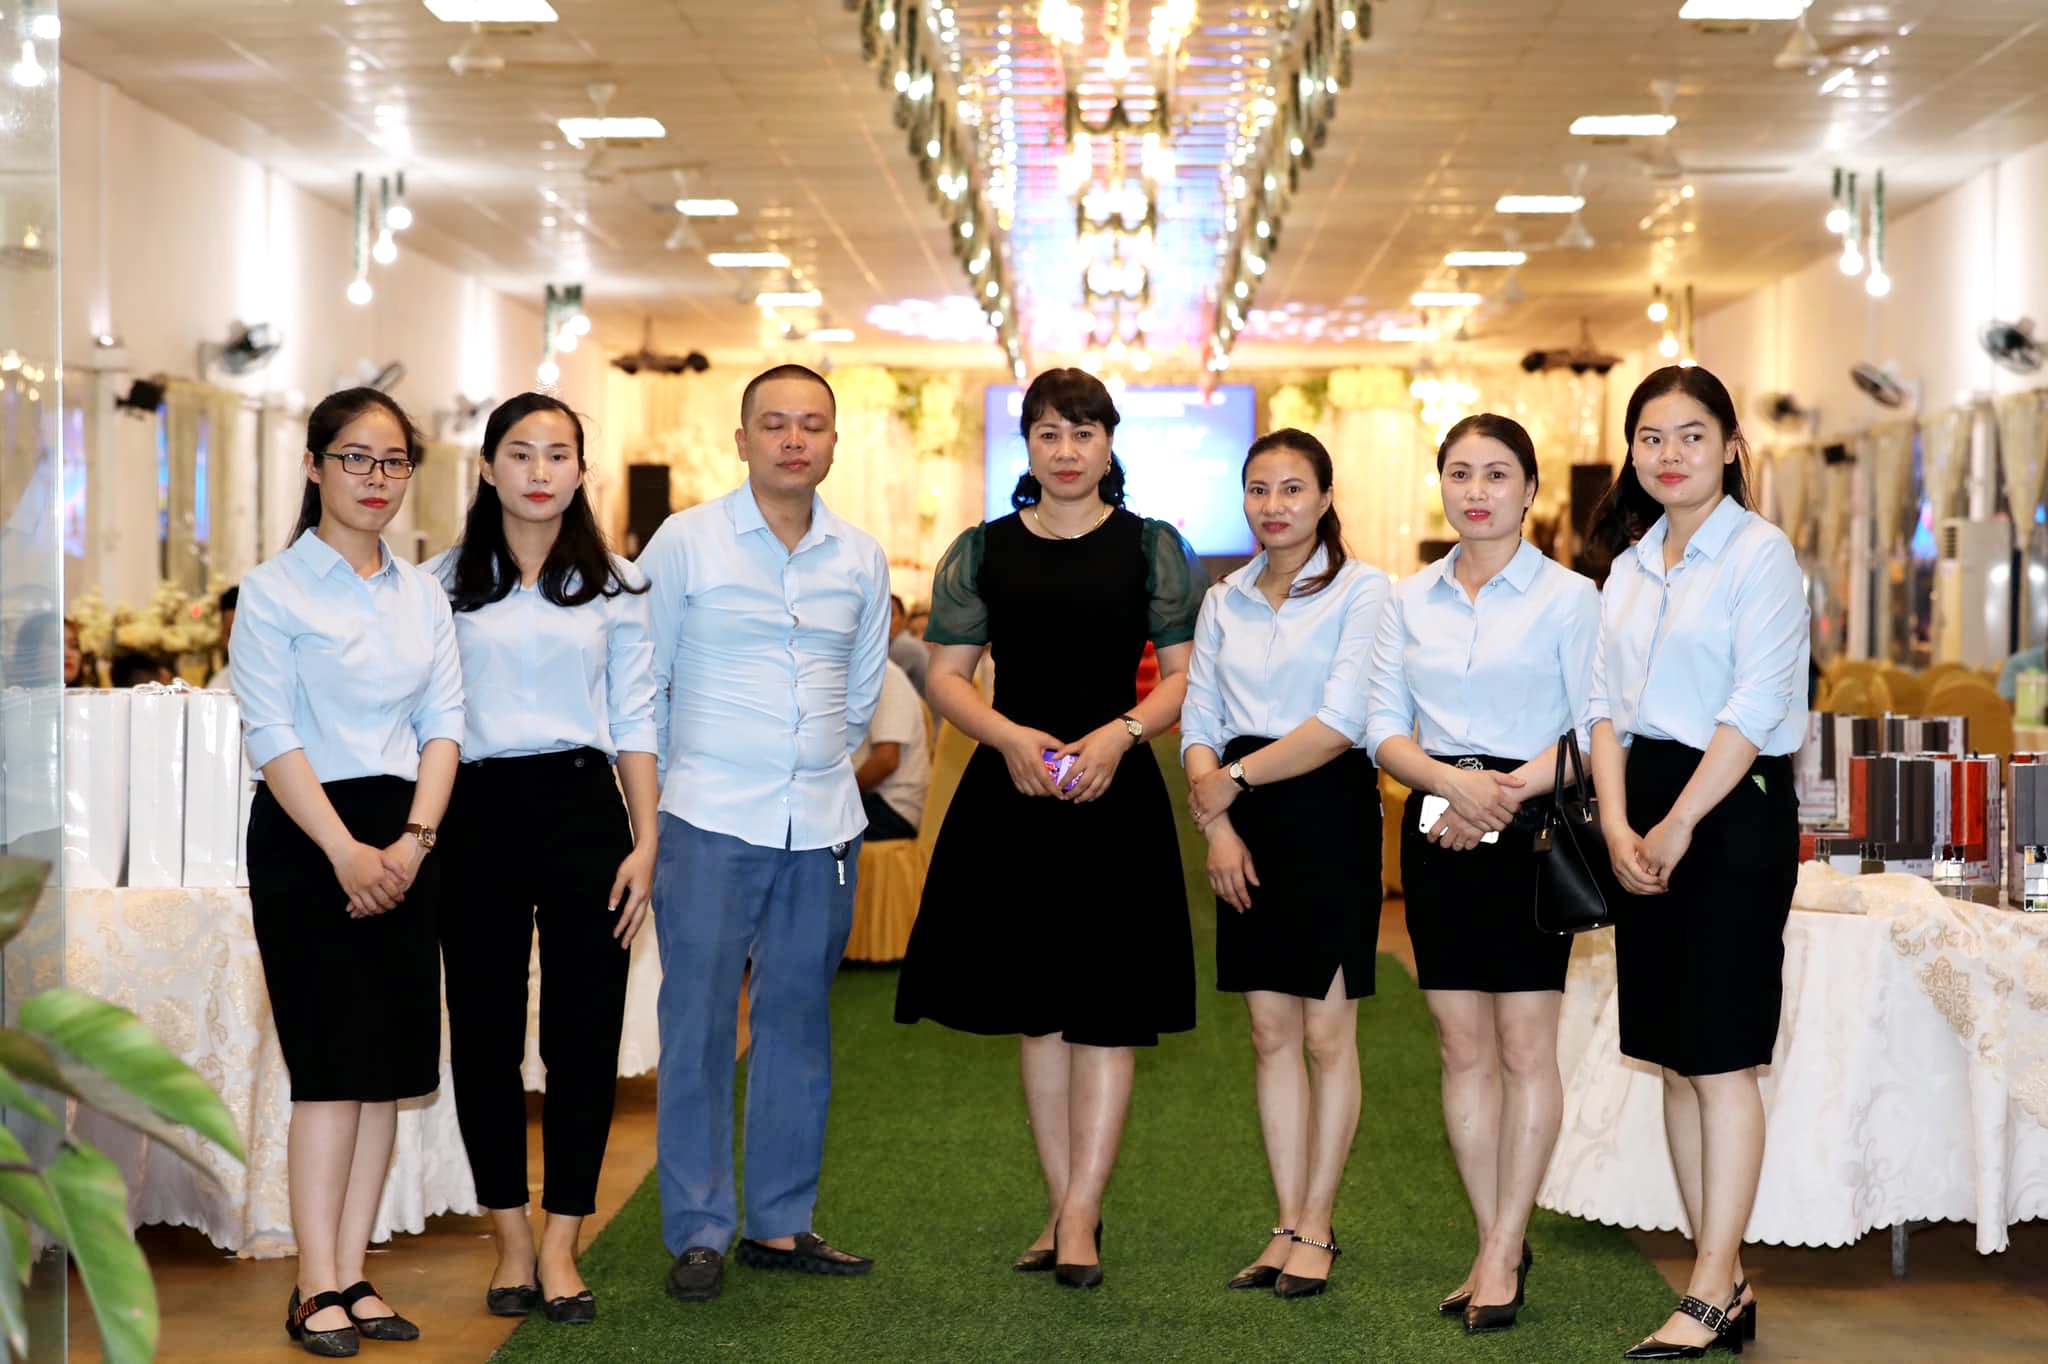 Nữ doanh nhân Nguyễn Thị Yến (đứng giữa) cùng nhân viên trong lễ kỷ niệm 11 năm thành lập công ty.